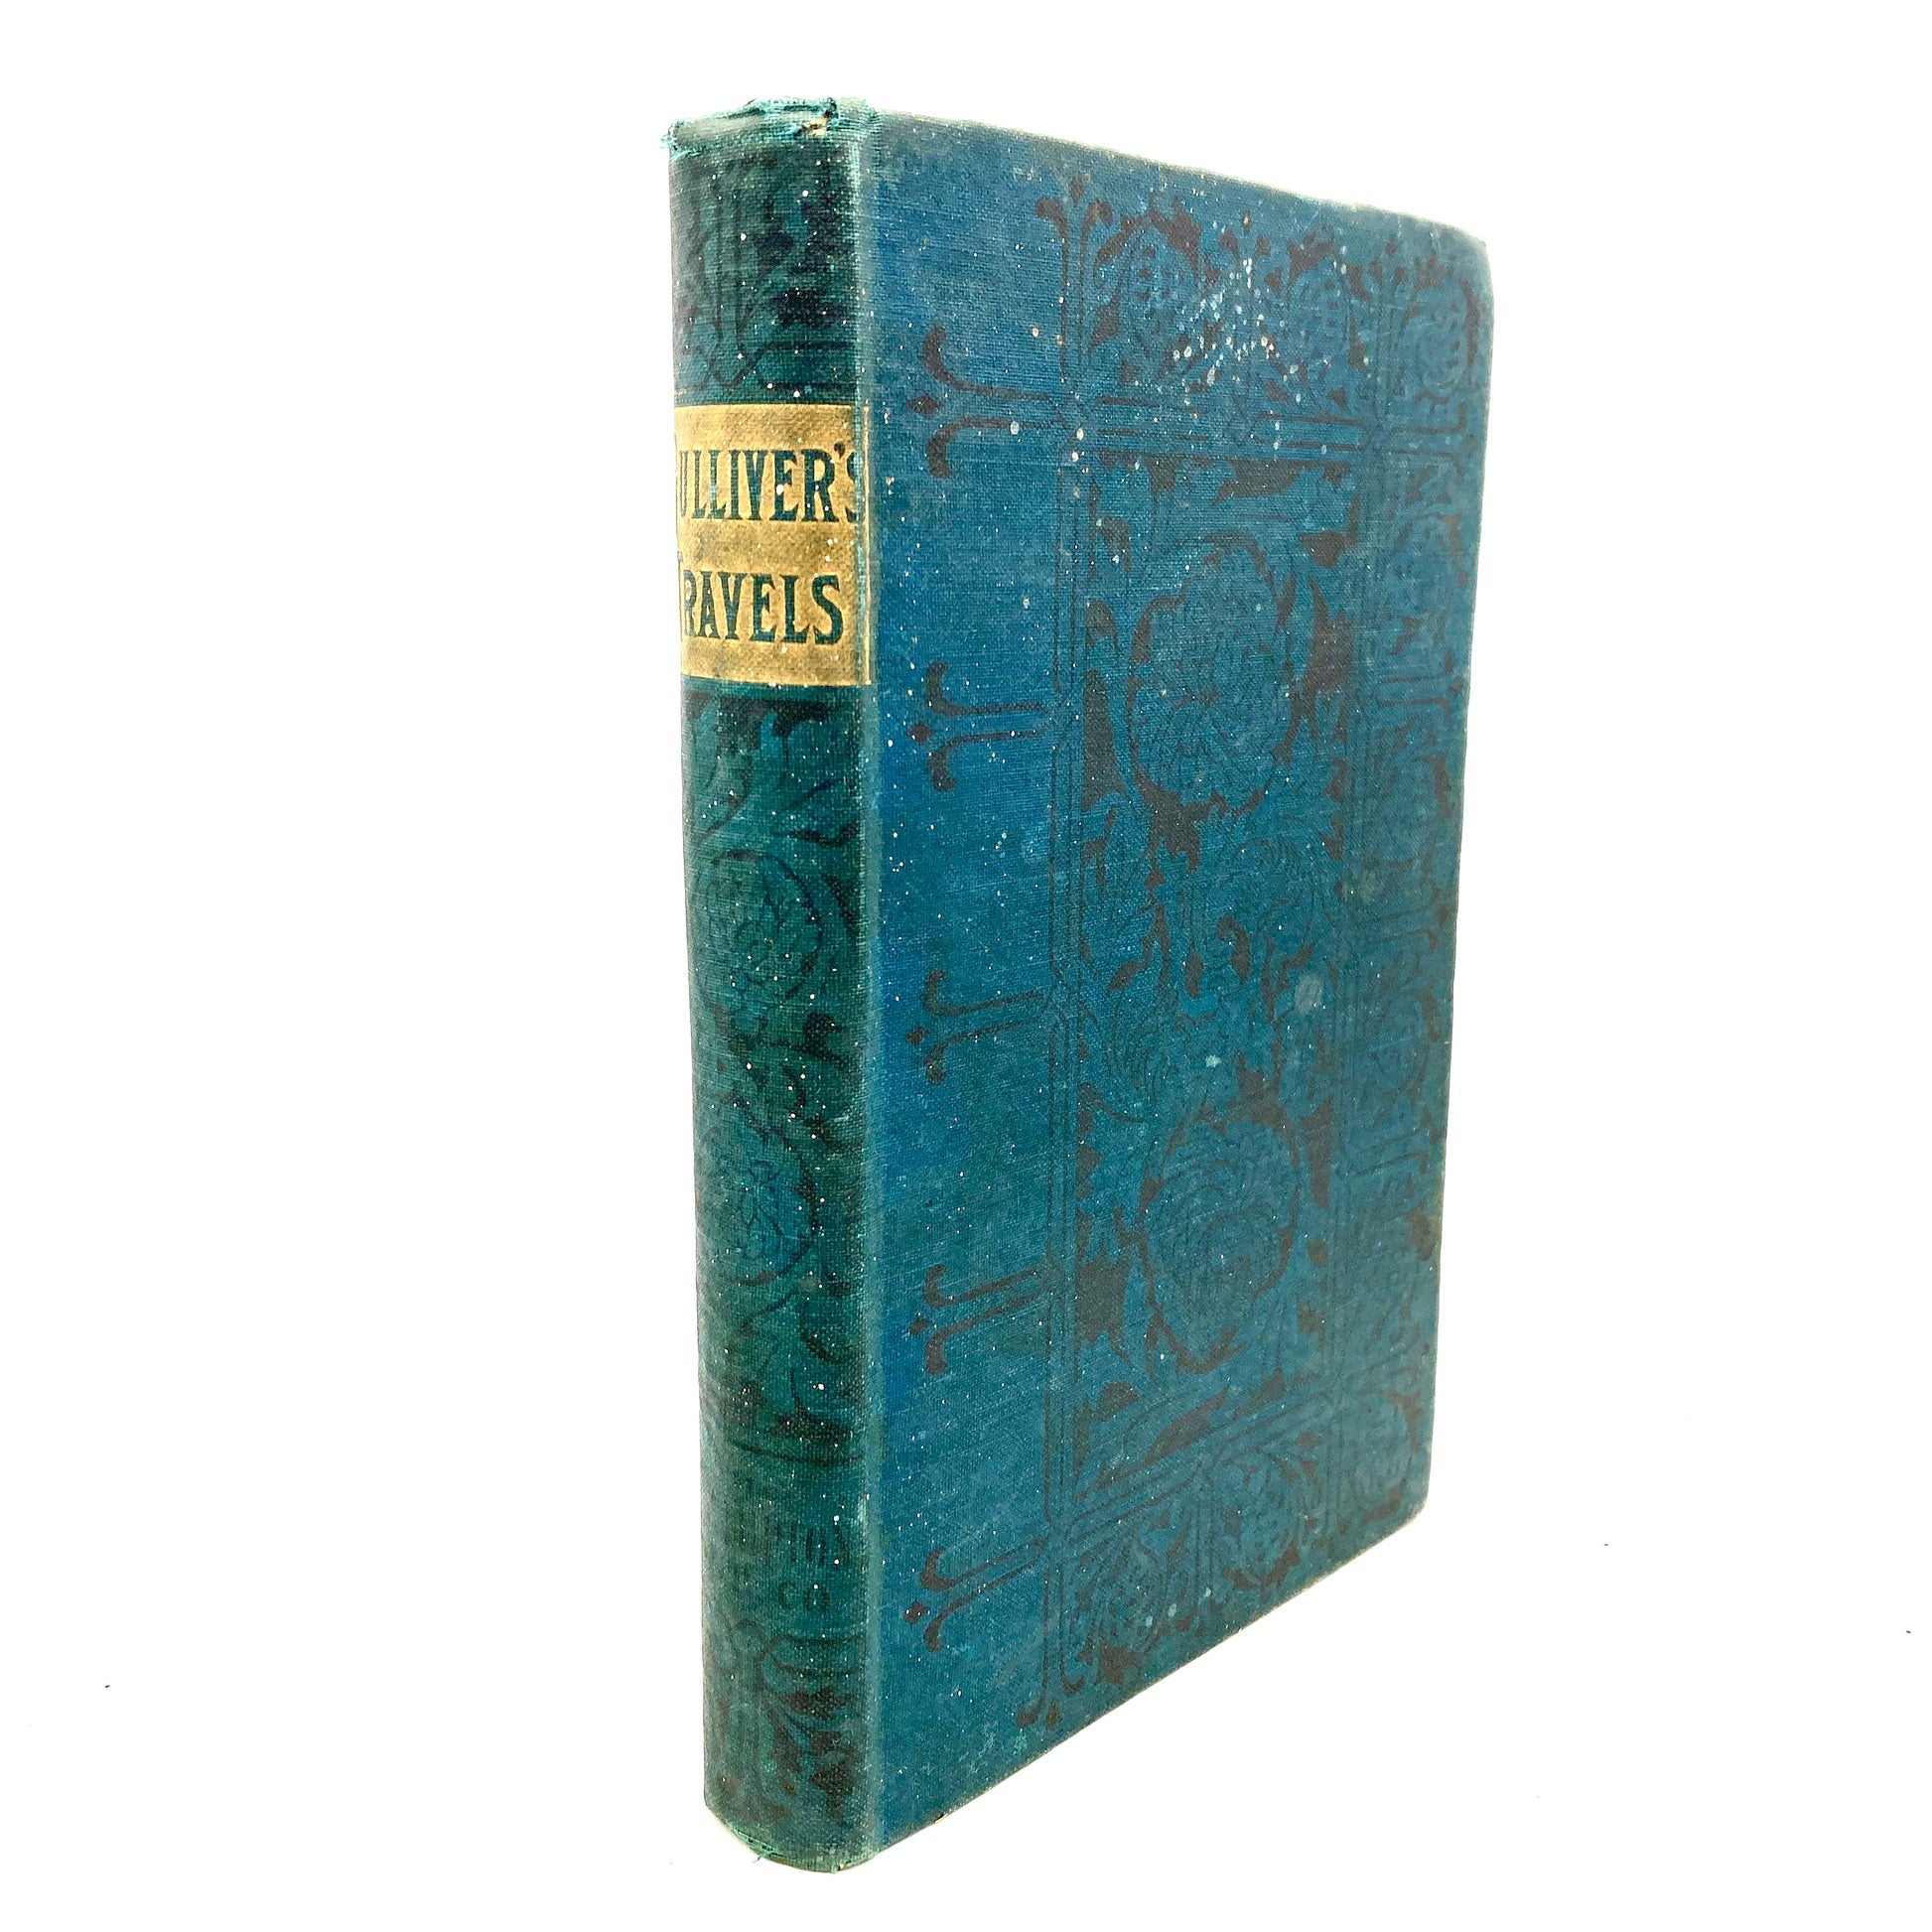 SWIFT, Jonathan "Gulliver's Travels" [F.M. Lupton, c1890] - Buzz Bookstore